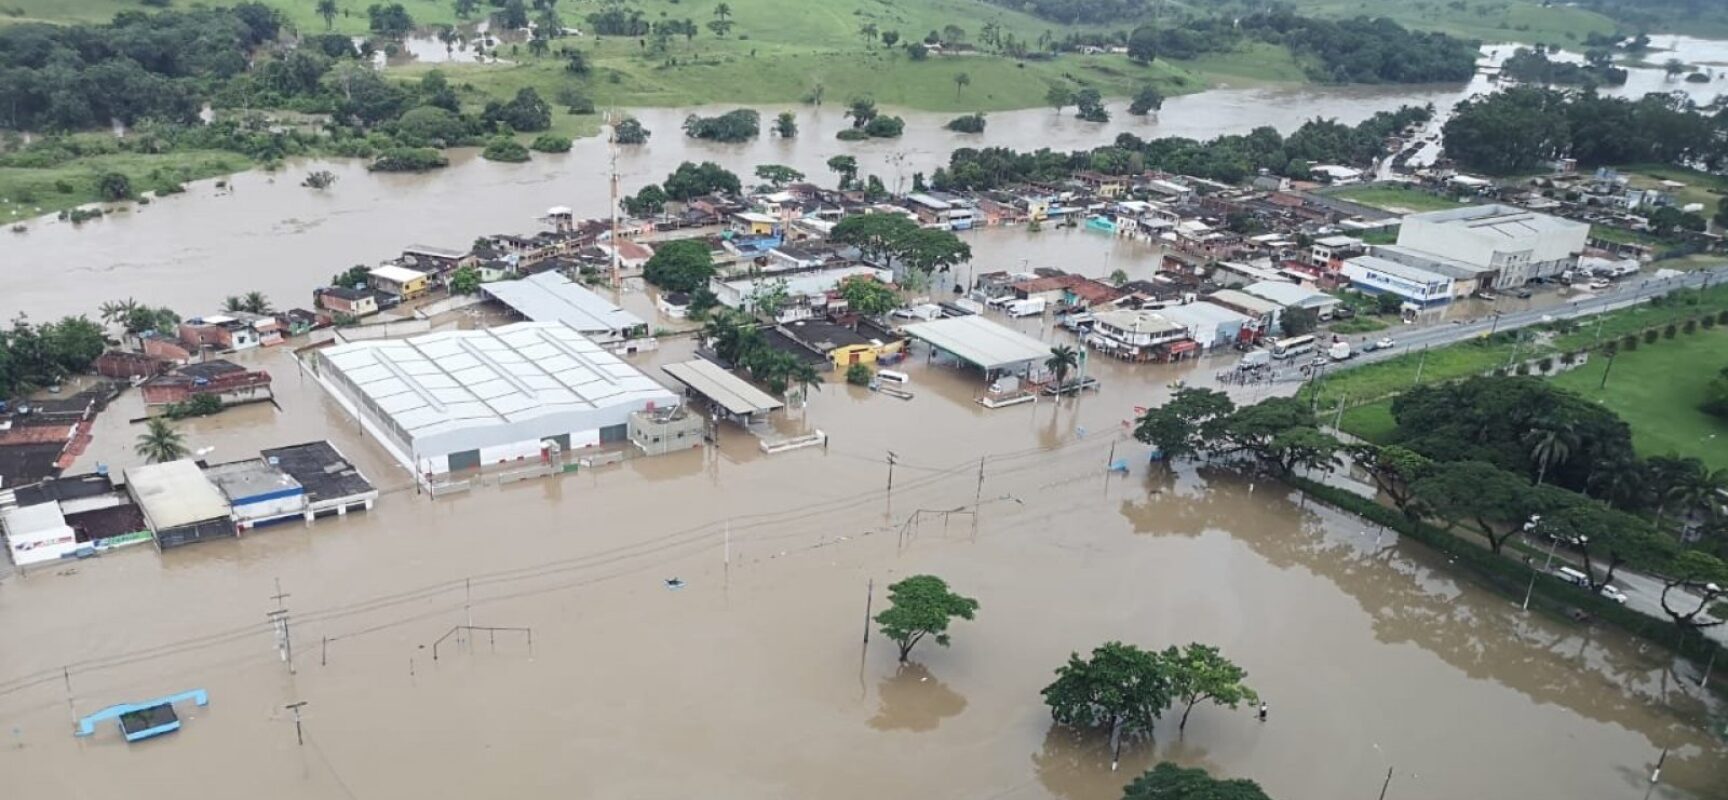 União não envia novos recursos para socorrer municípios atingidos pelas enchentes